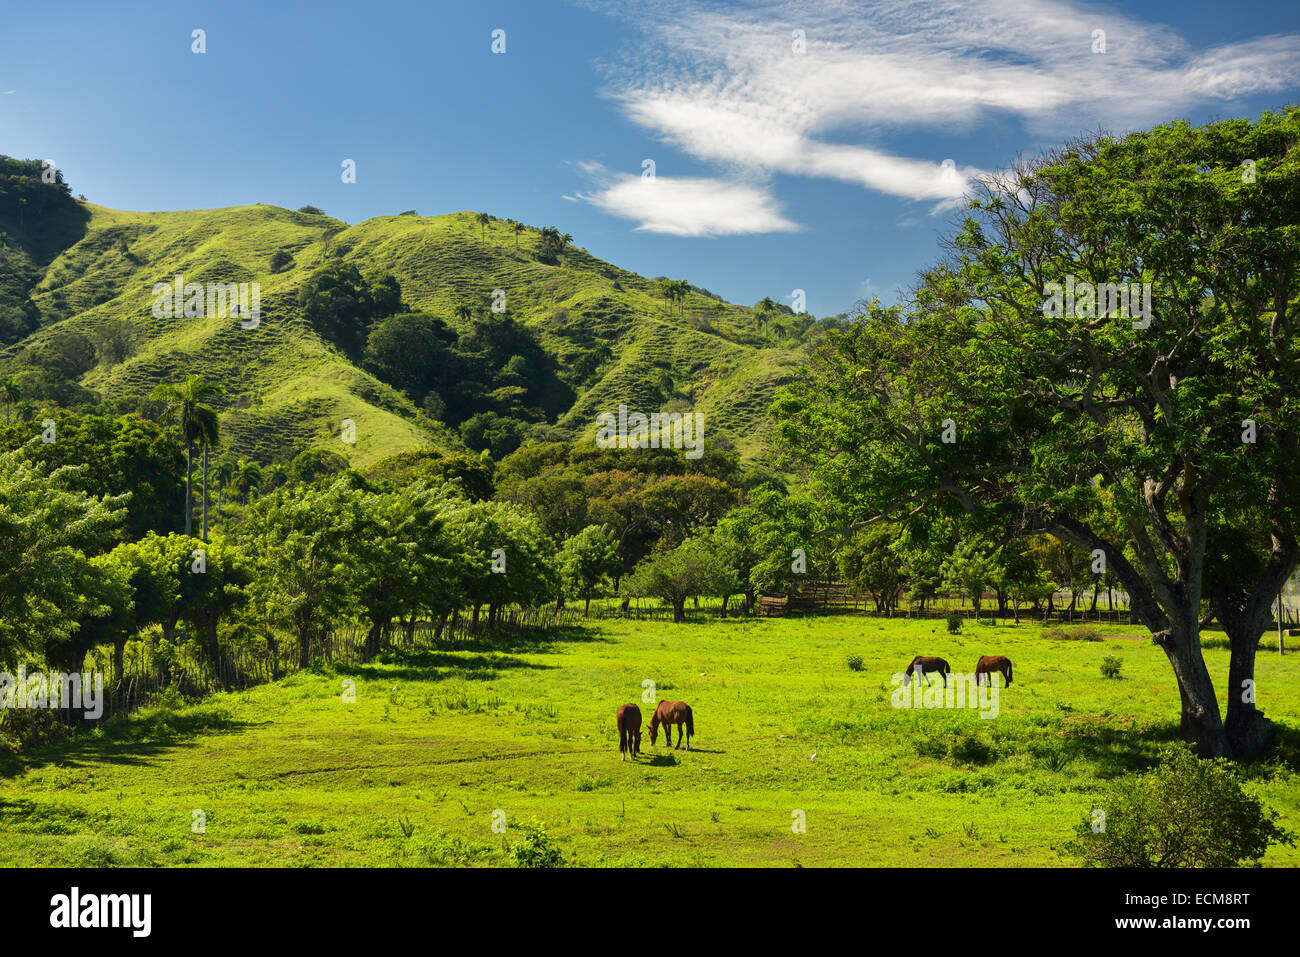 Pferde weiden auf grünen Rasen der Ranch land neben einem Berg westlich von Puerto Plata Dominikanische Republik Stockfoto